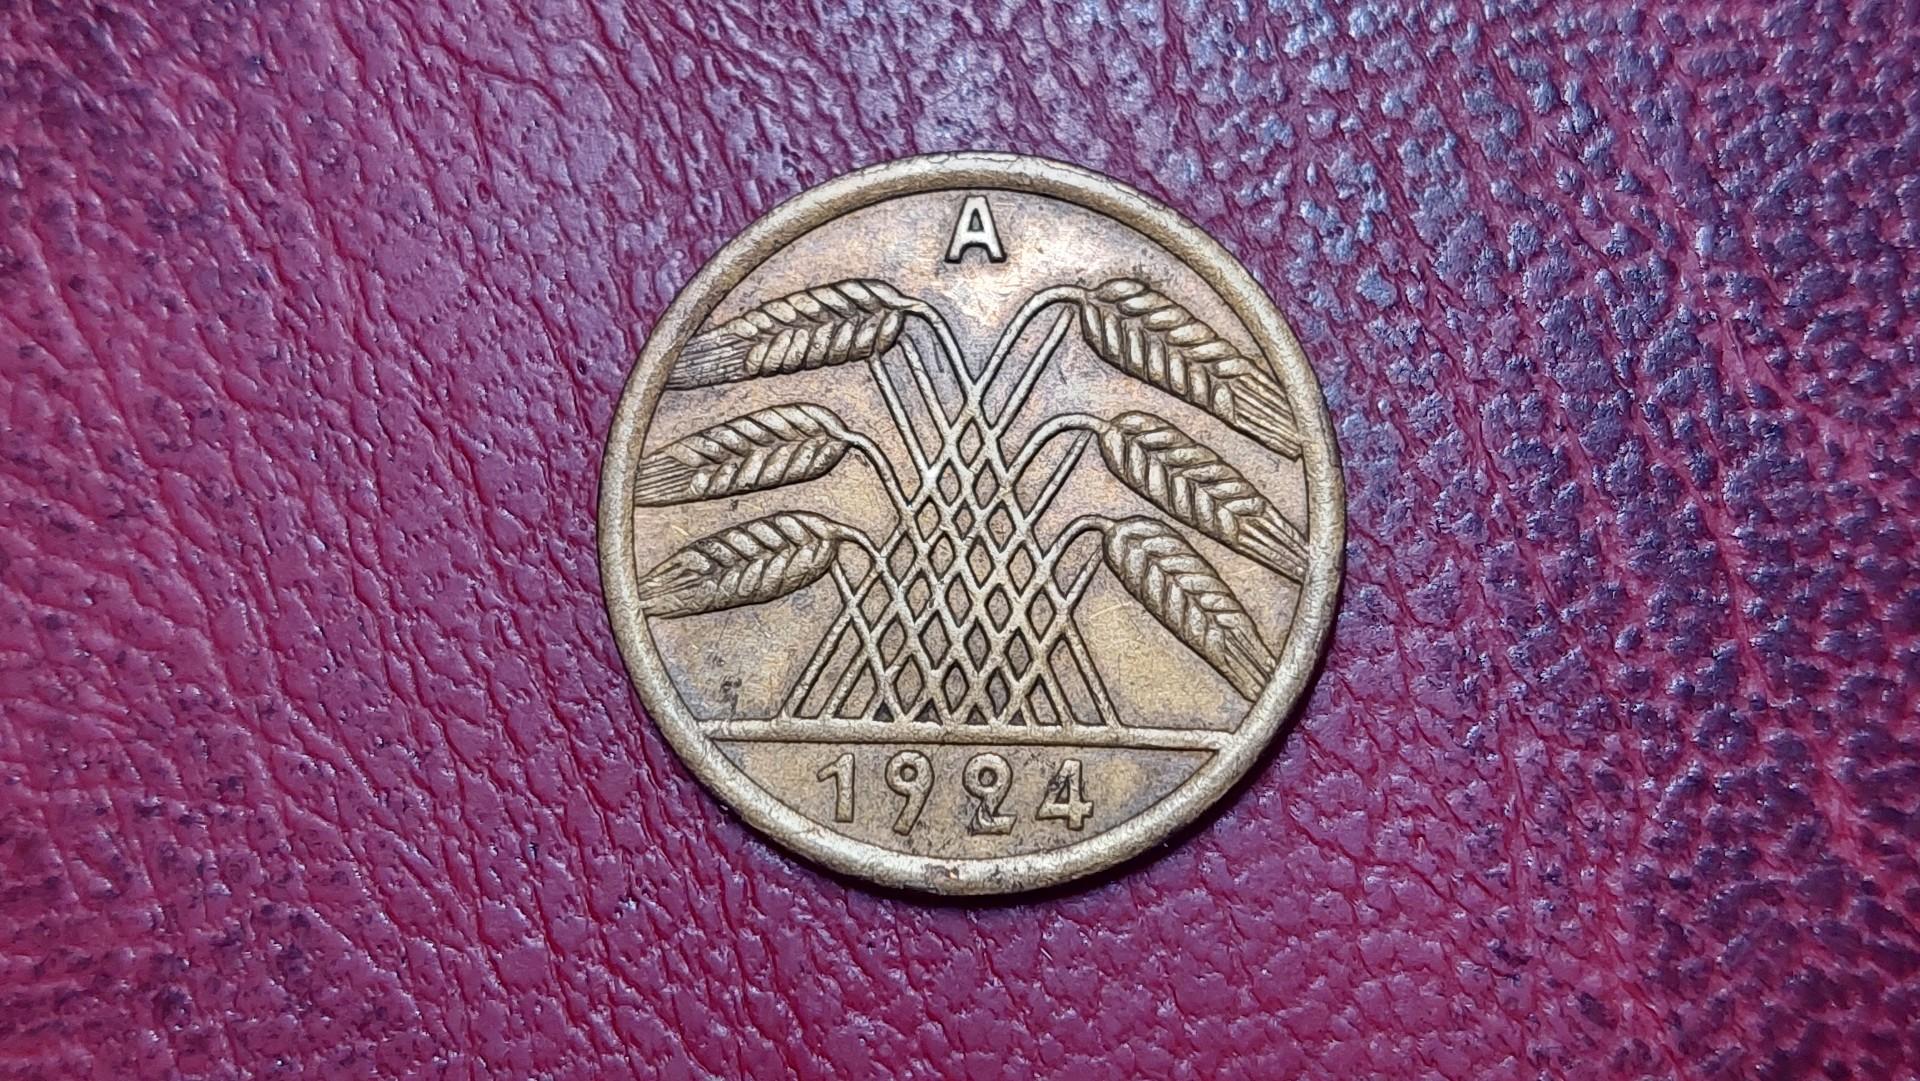 Vokietija 50 rentenpfenigų, 1924A KM# 34